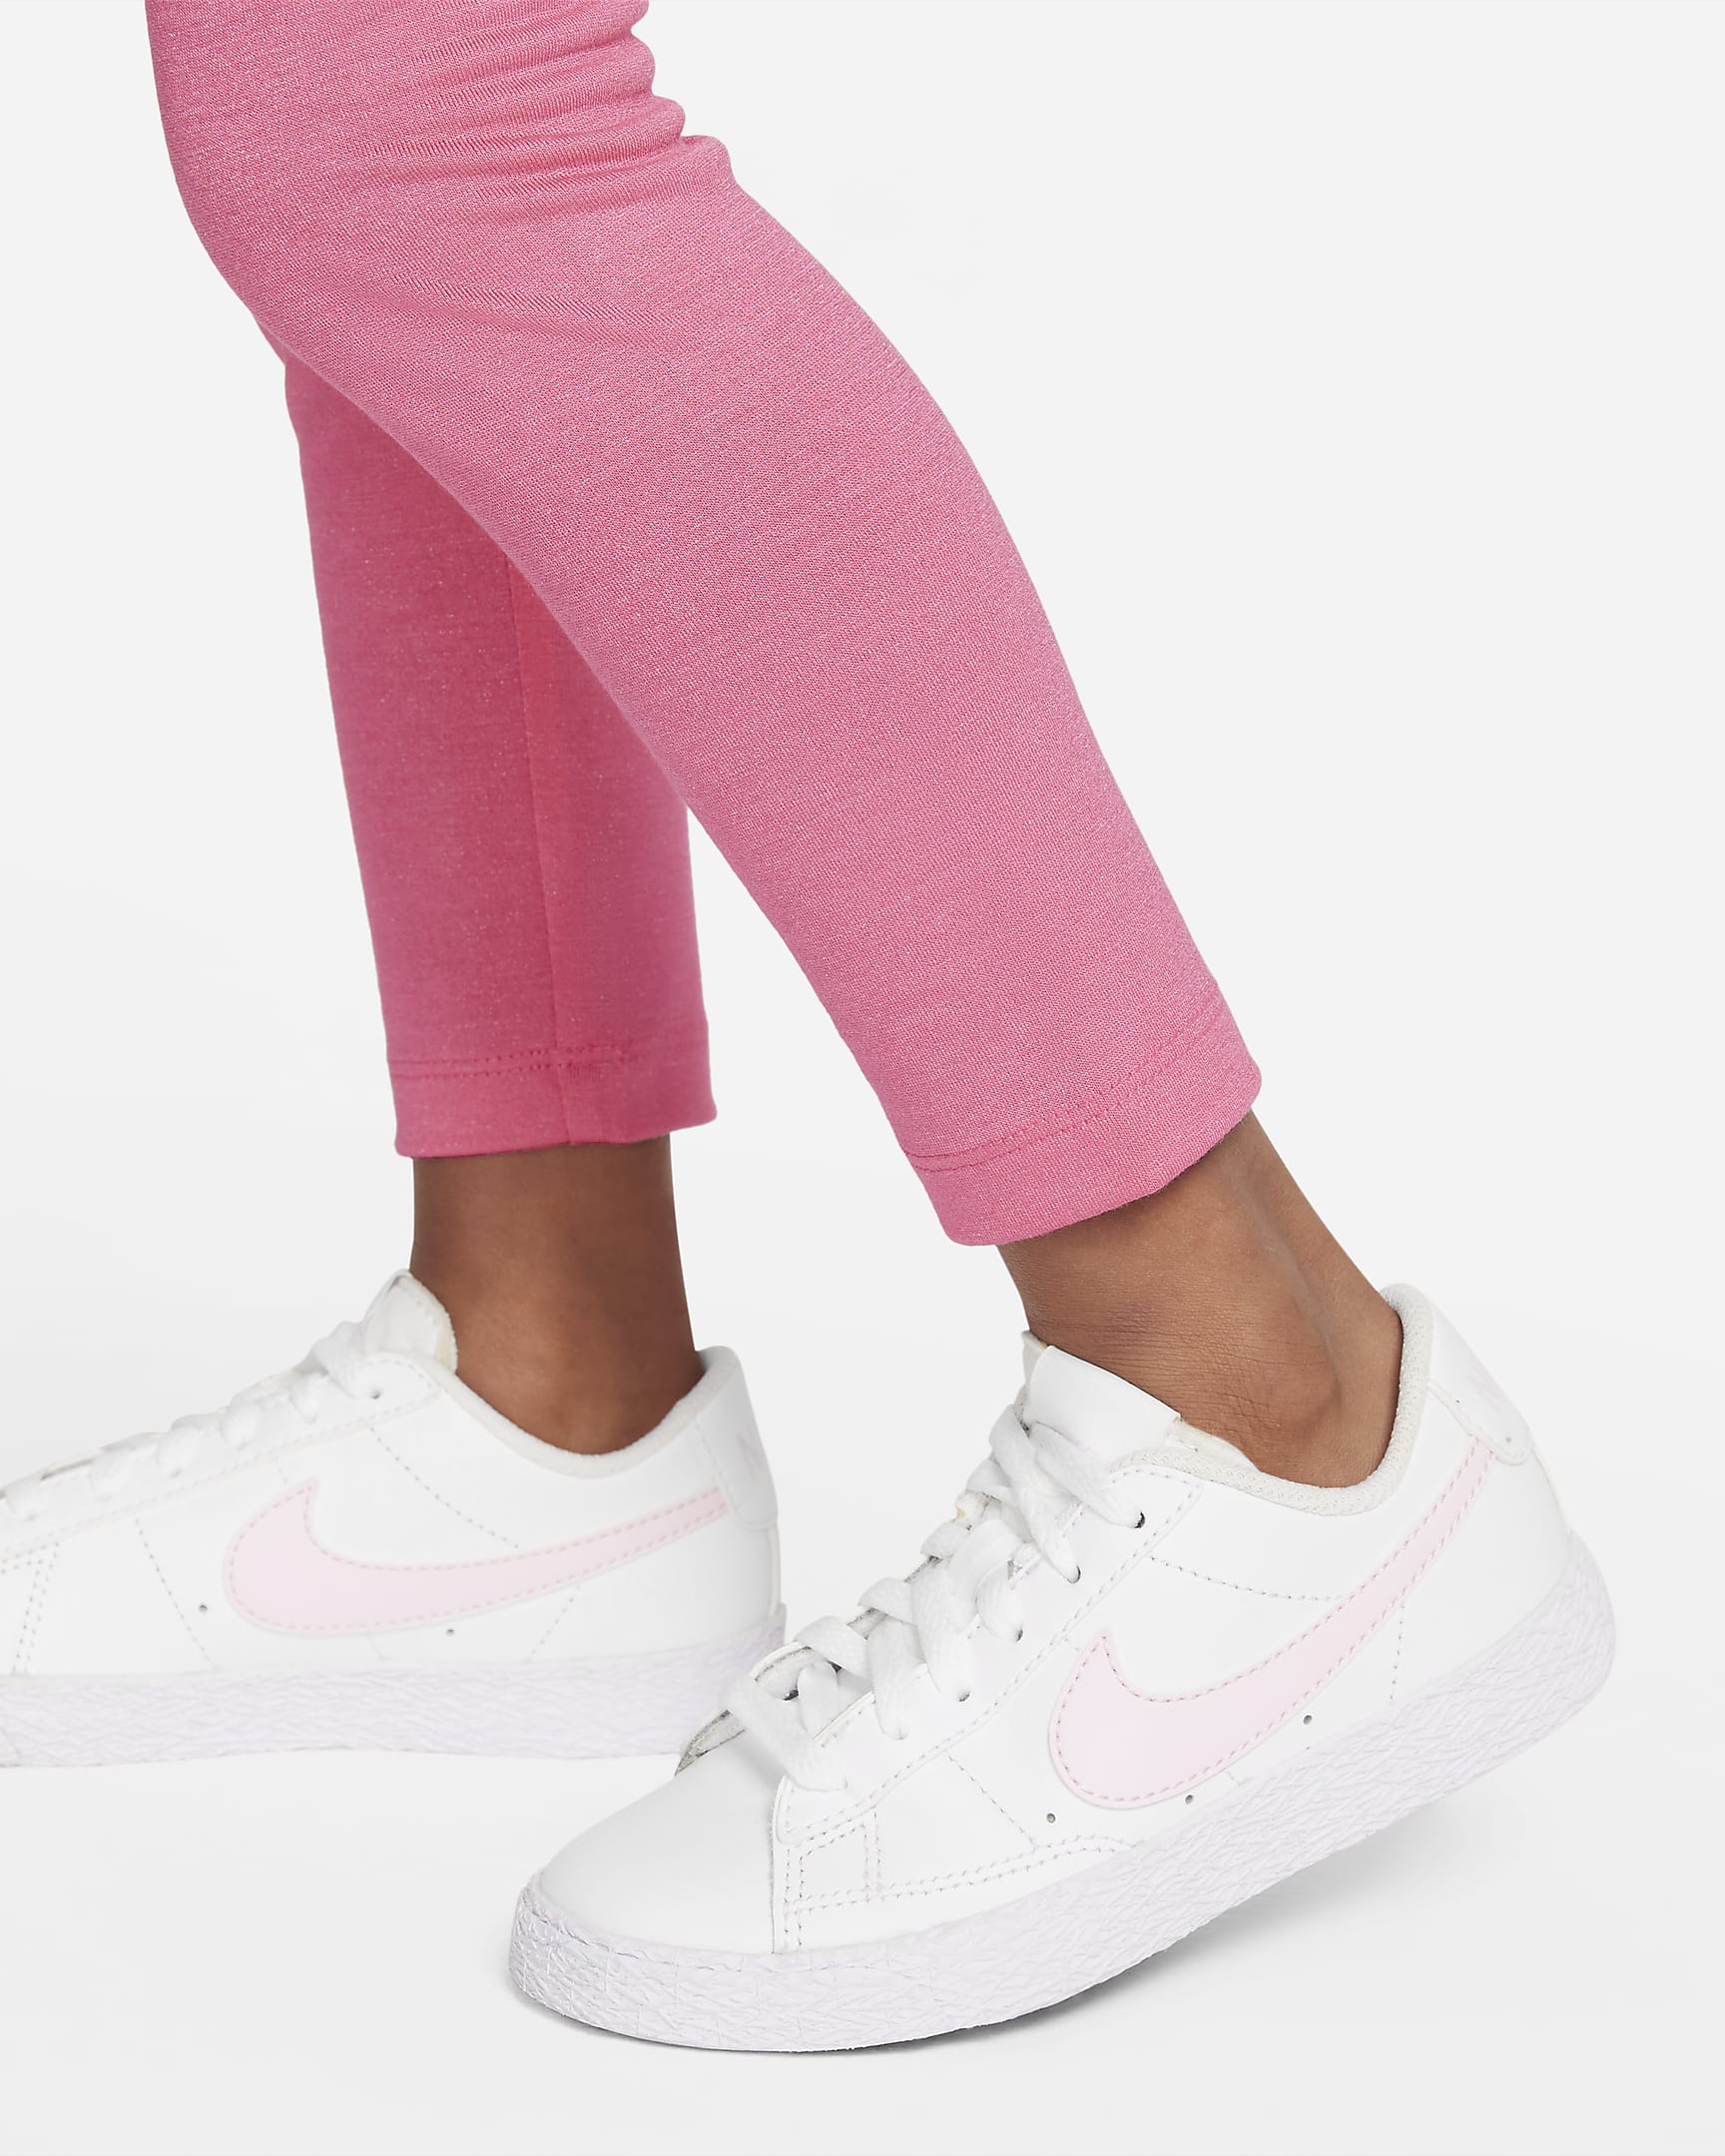 Leggings infantil Nike. Nike.com